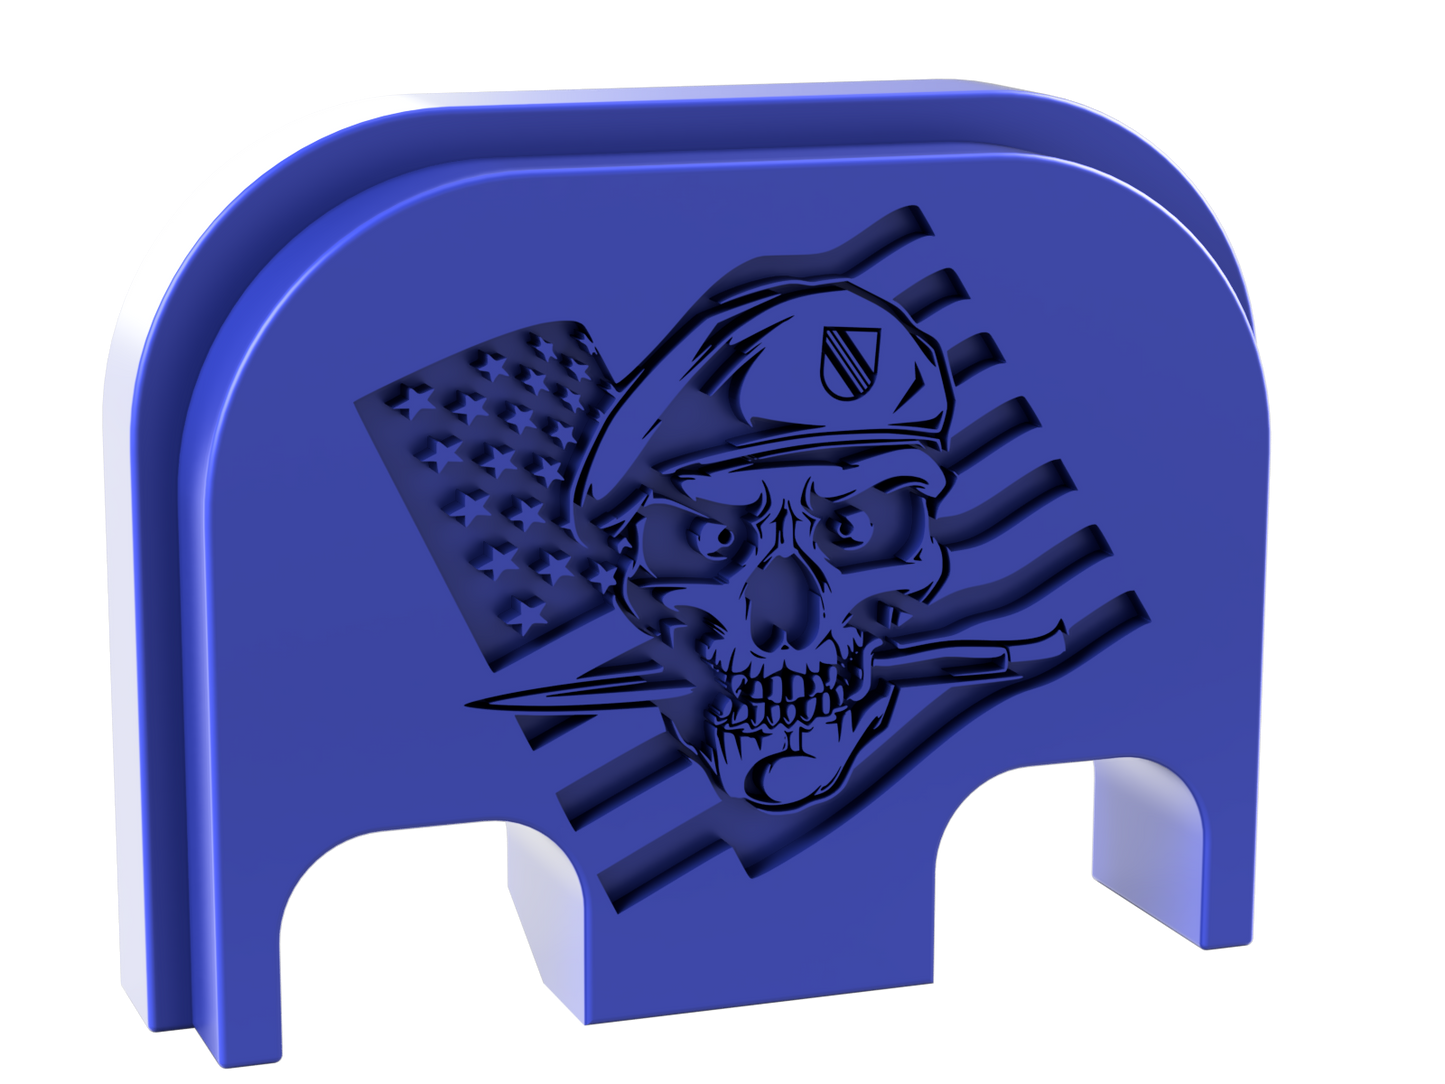 Special Forces Skull Glock Slide Back Plate Deep Engraving